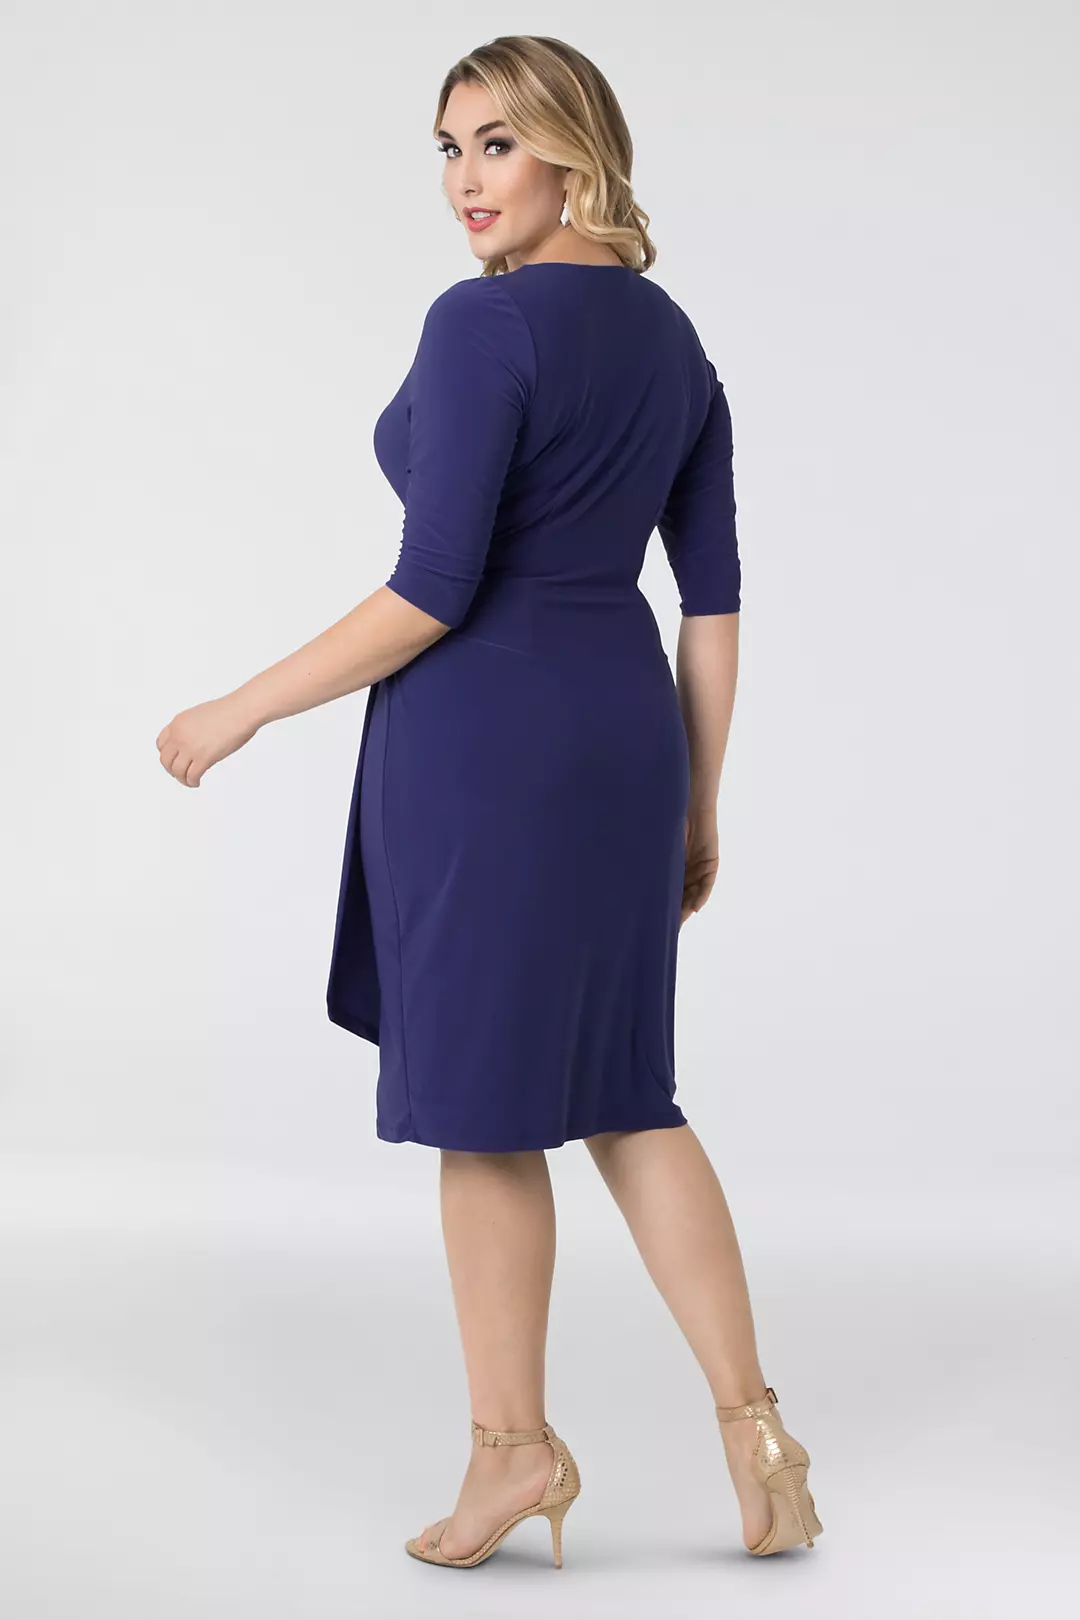 Ciara Jersey Plus Size Faux Wrap Dress Image 2